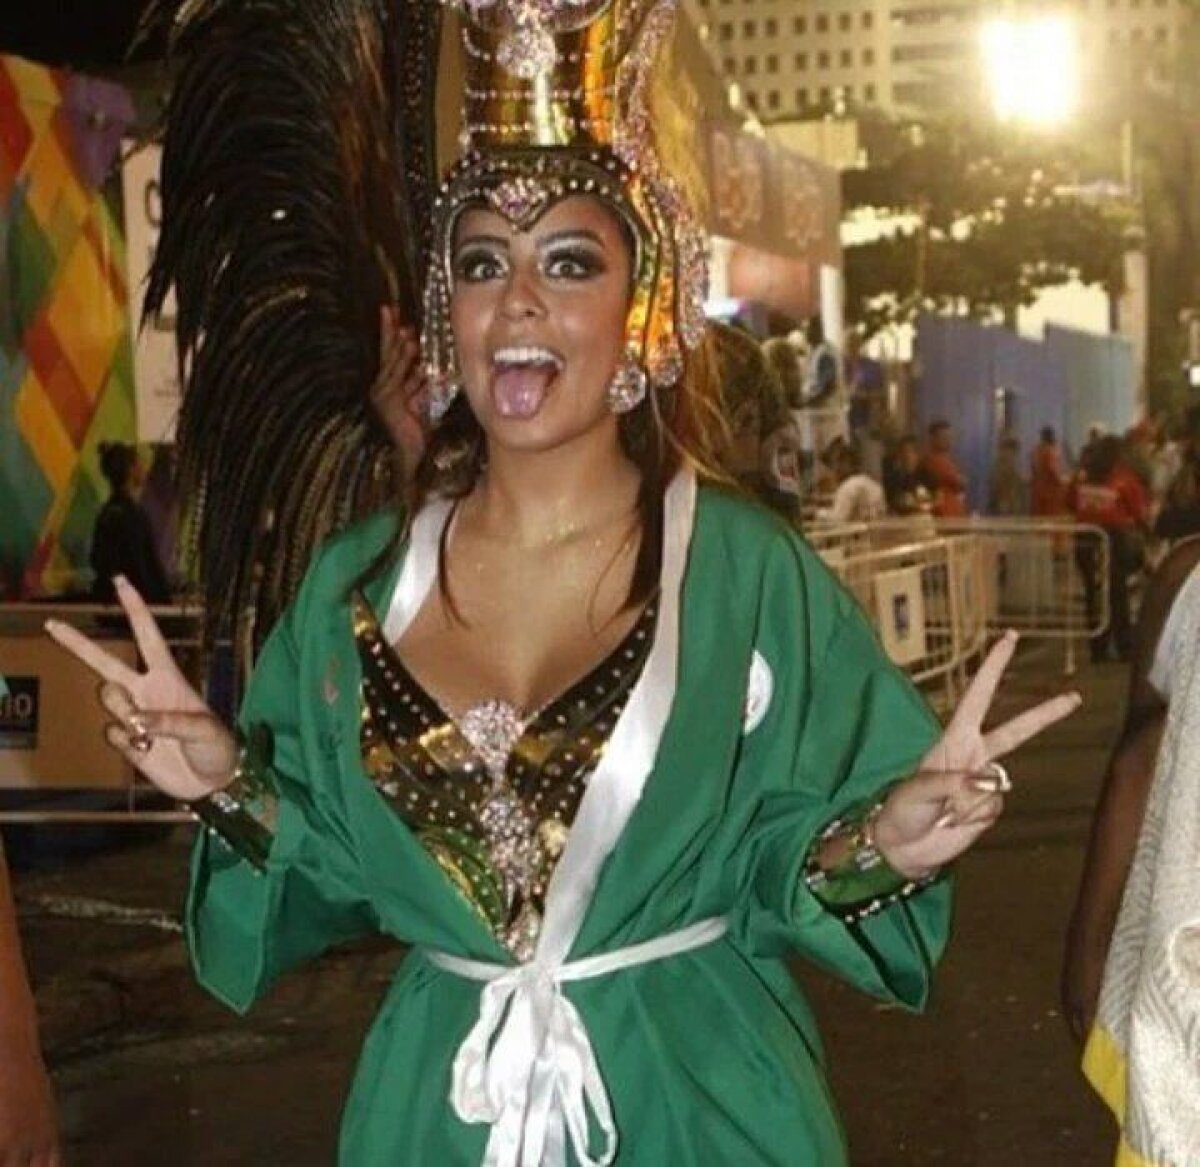 VIDEO Sora lui Neymar a făcut senzație la Carnavalul de la Rio » Dans senzual pe o minge de fotbal